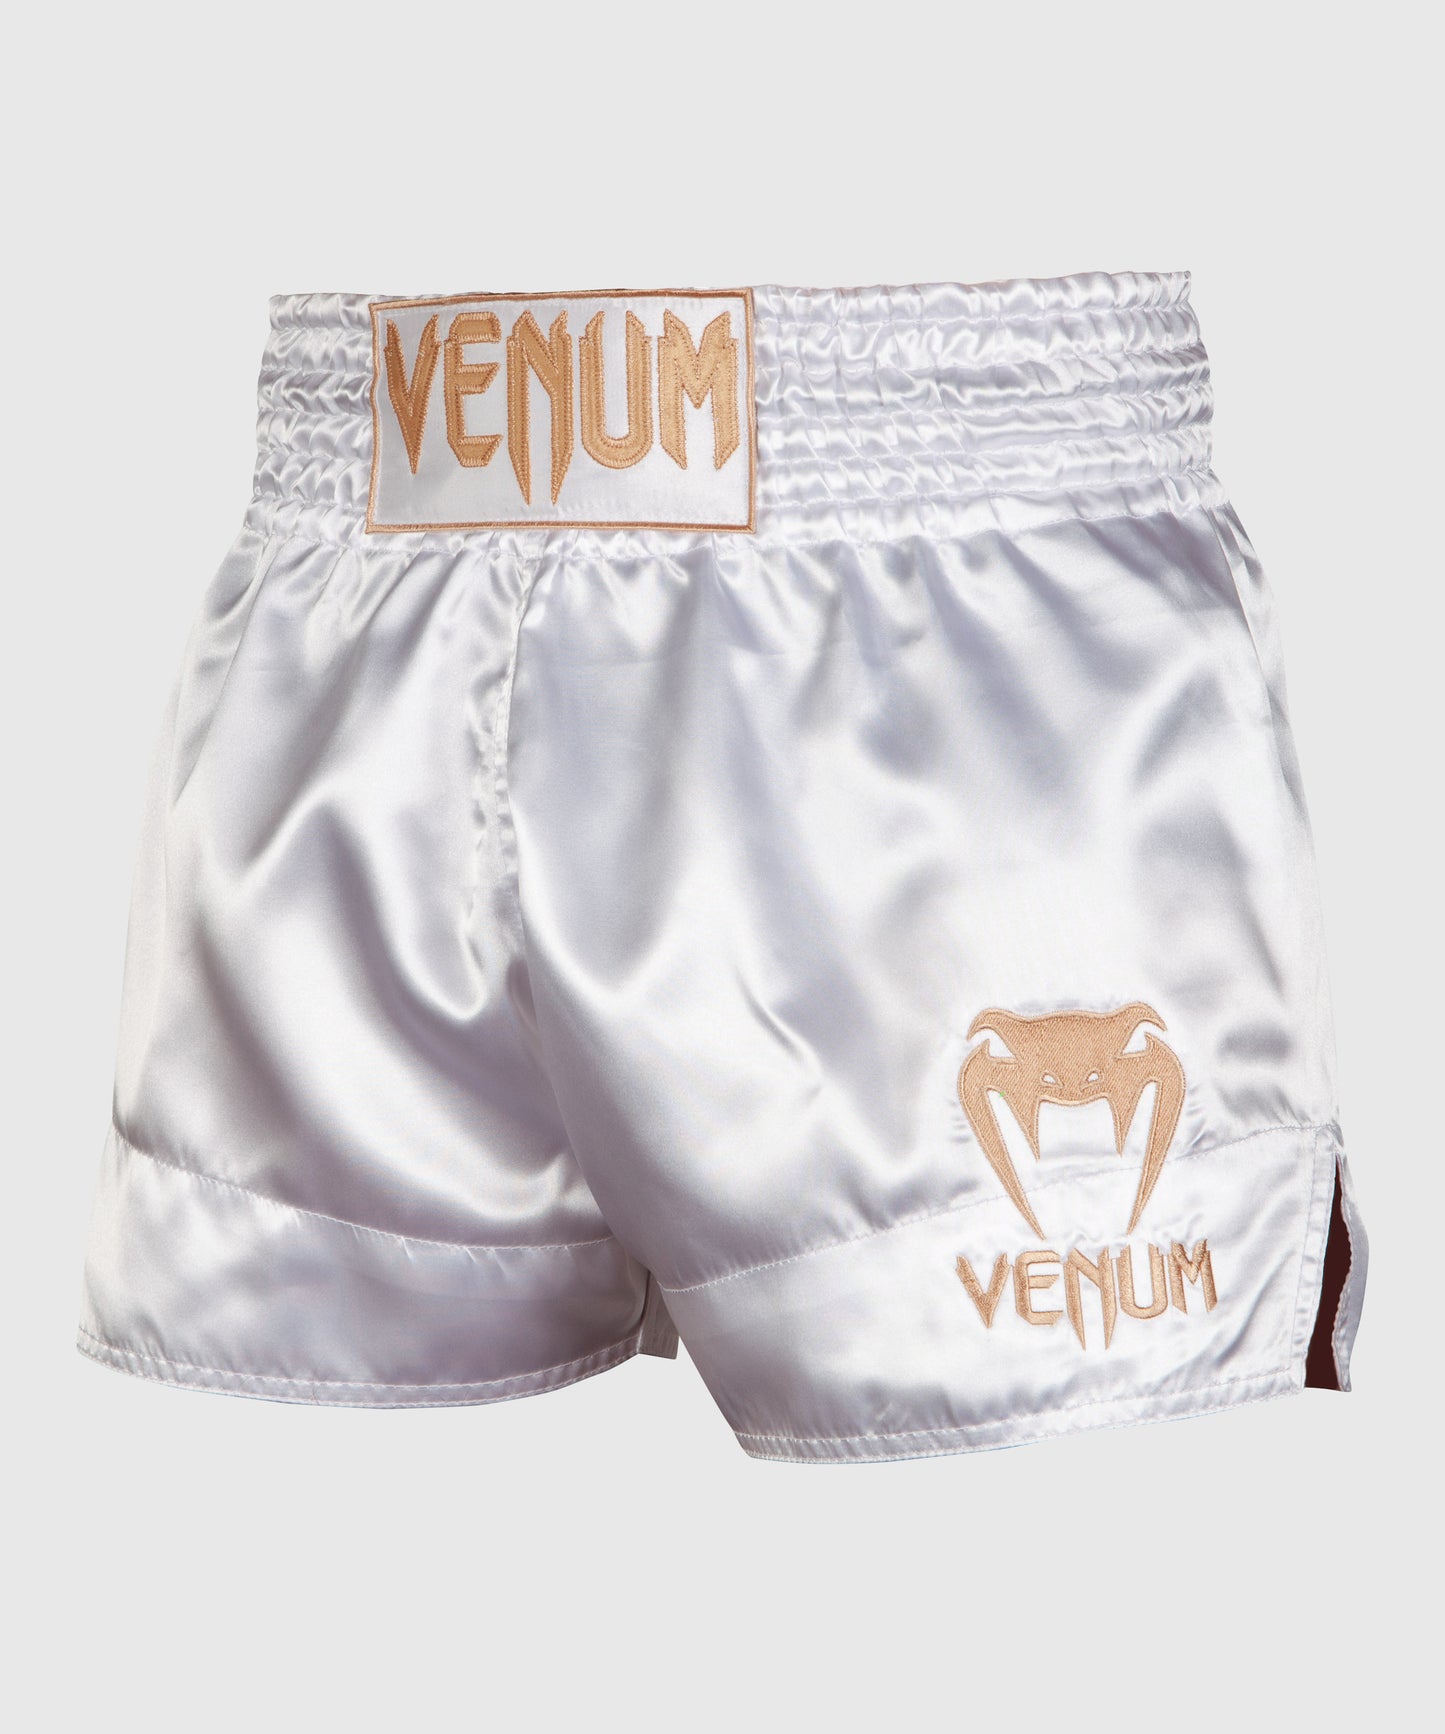 Venum Classic ムエタイショーツ - ホワイト/ゴールド